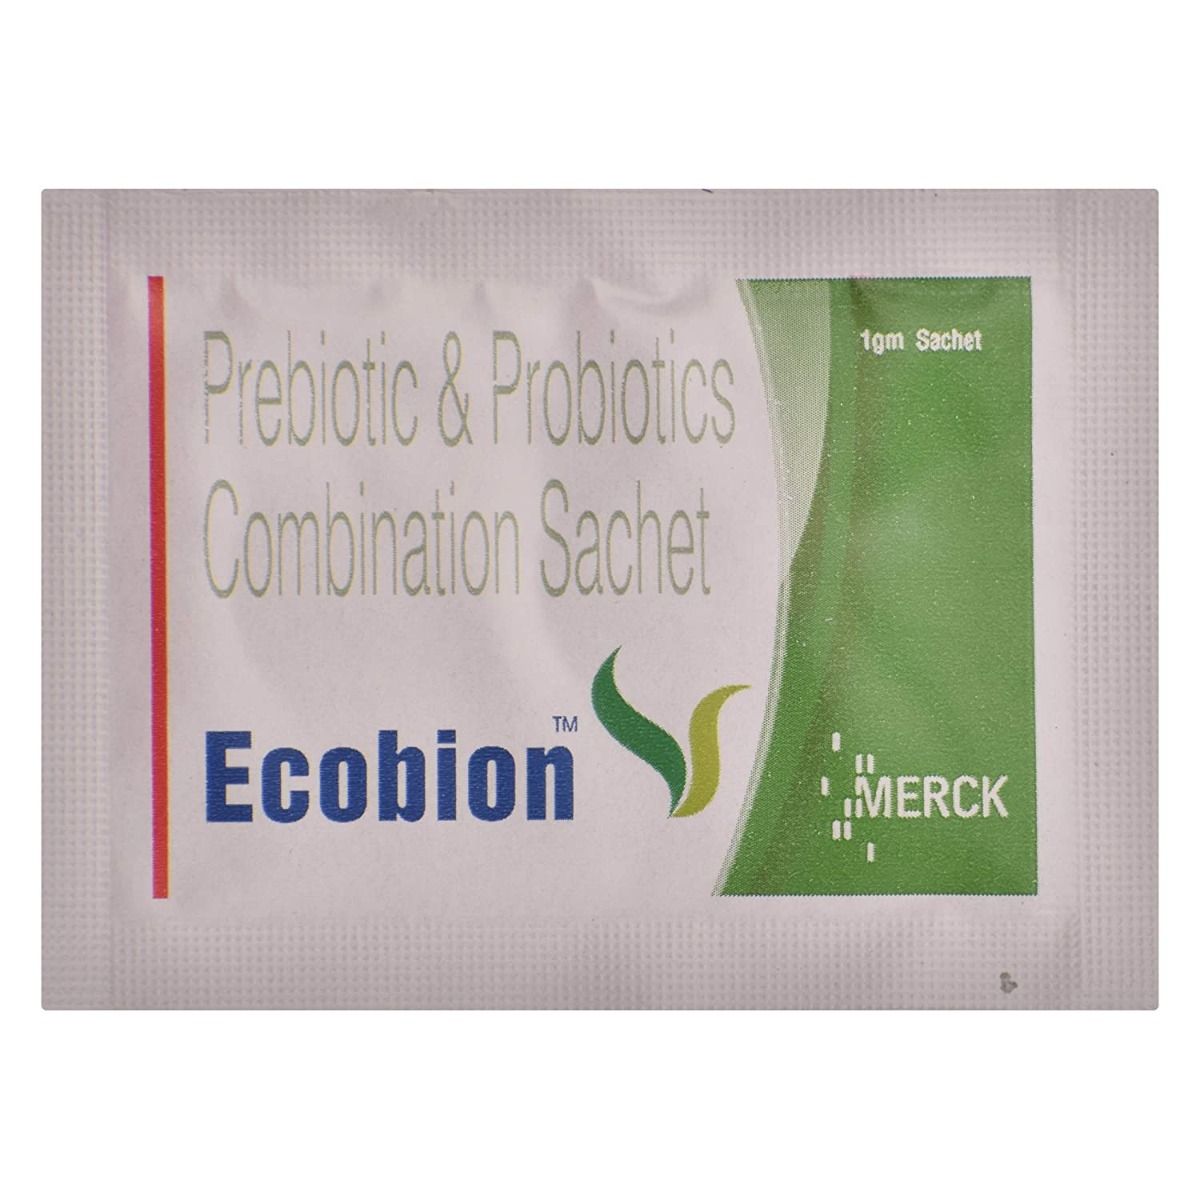 Ecobion Sachet 1 gm, Pack of 1 SACHET